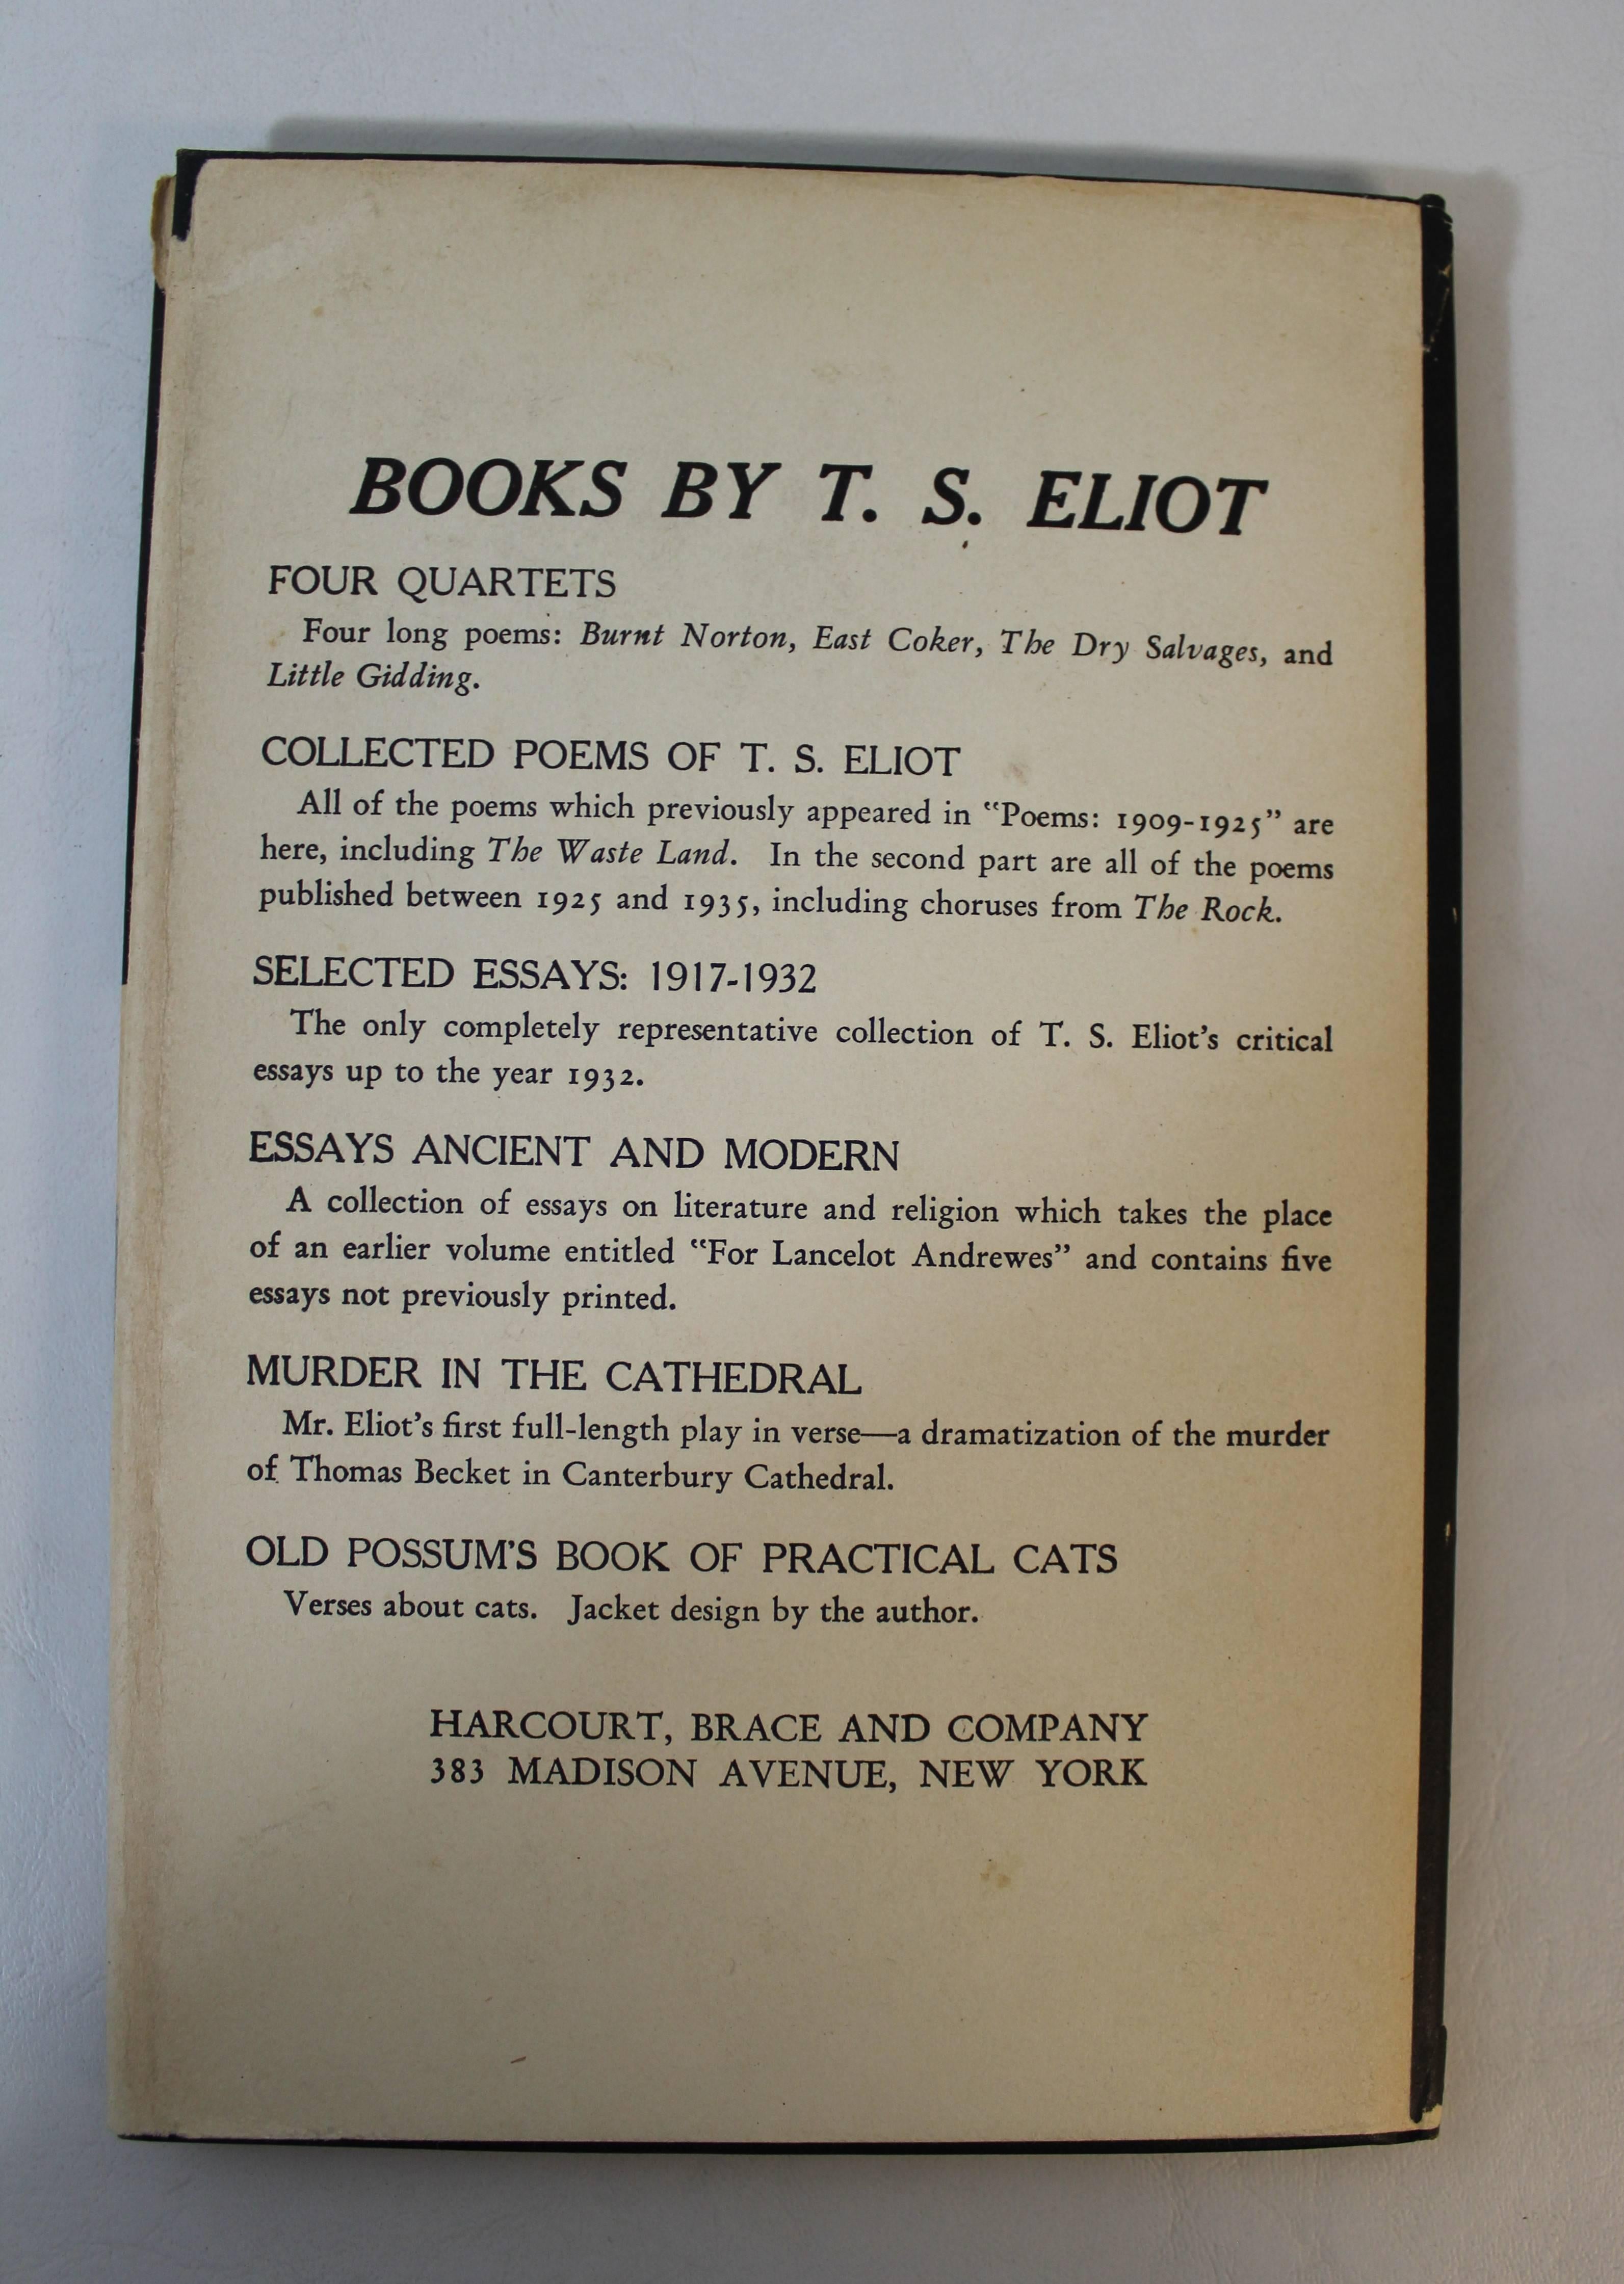 « Four Quartets », première édition de T.S. Eliot en vente 1